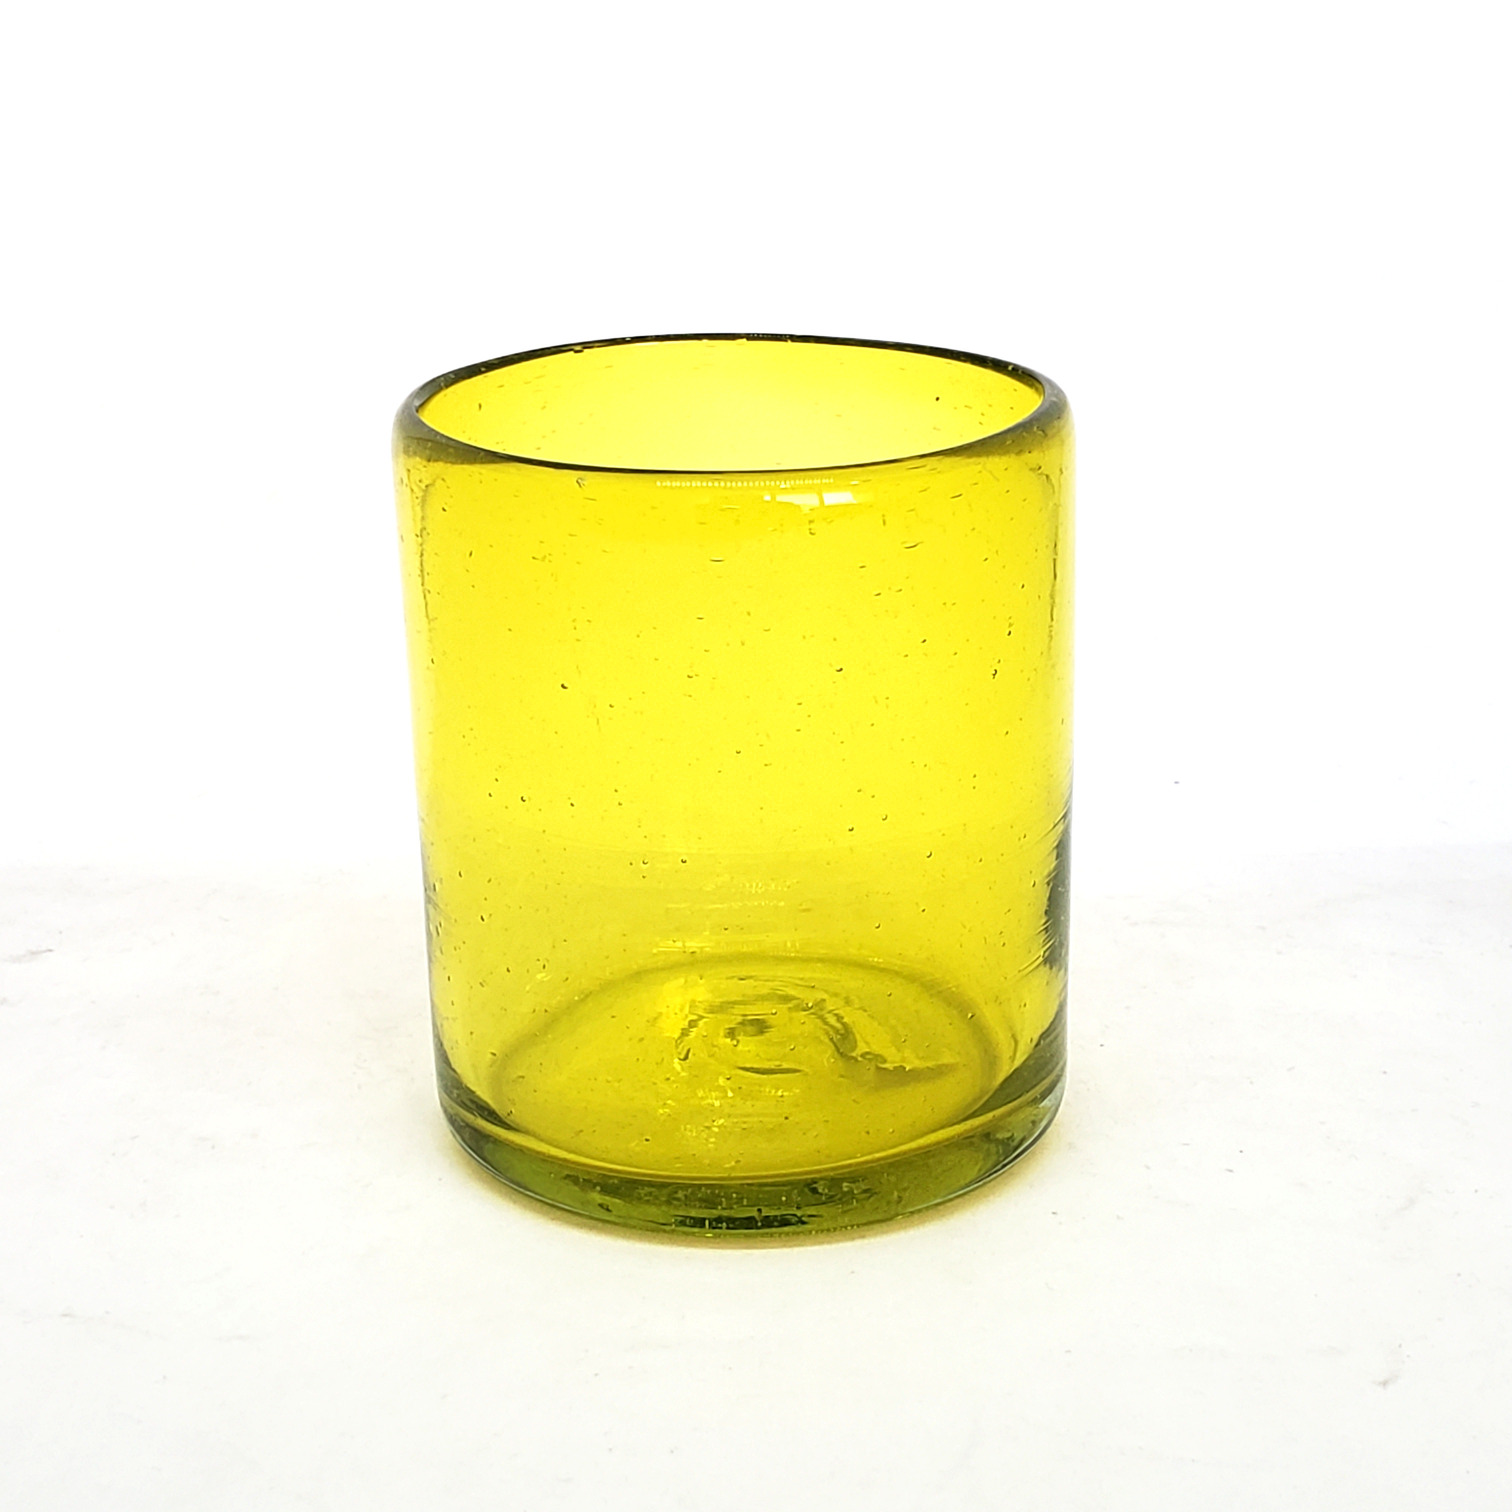 Colores Solidos / Vasos chicos 9 oz color Amarillo Sólido (set de 6) / Éstos artesanales vasos le darán un toque colorido a su bebida favorita.